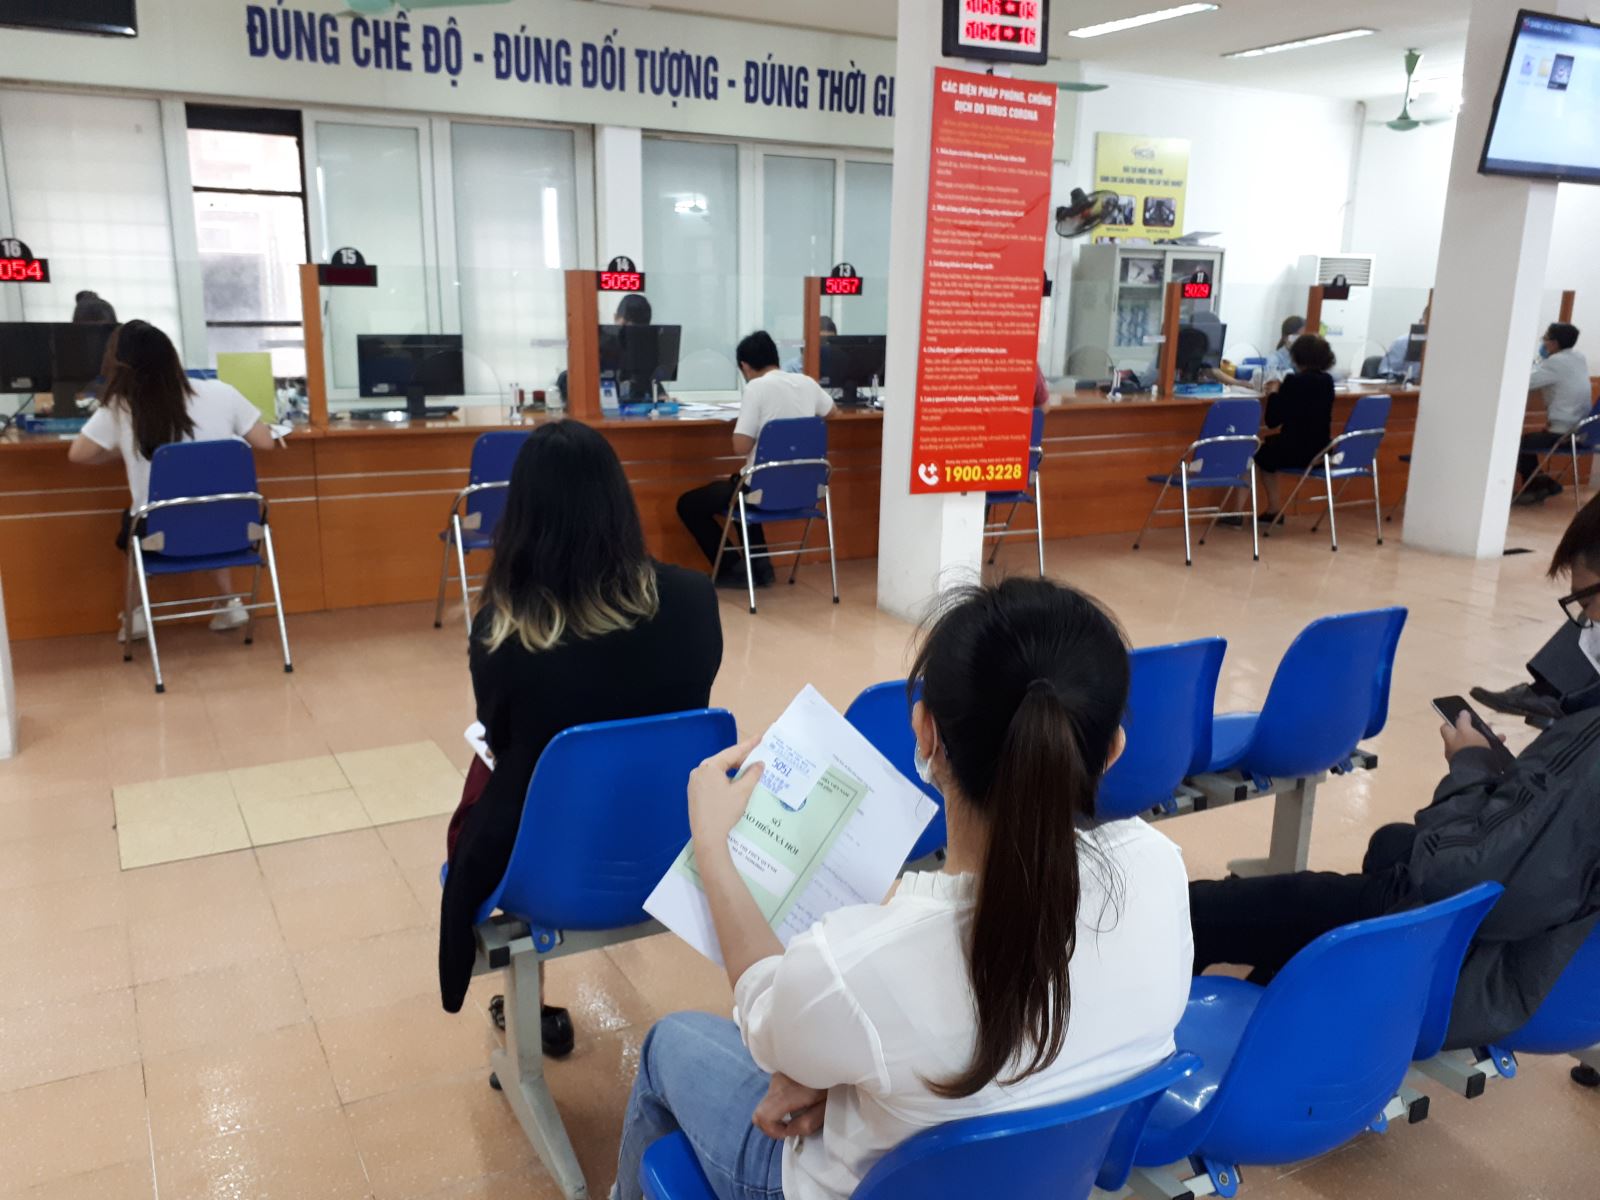 Người lao động làm thủ tục hưởng Bảo hiểm thất nghiệp tại Trung tâm Dịch vụ việc làm Hà Nội.